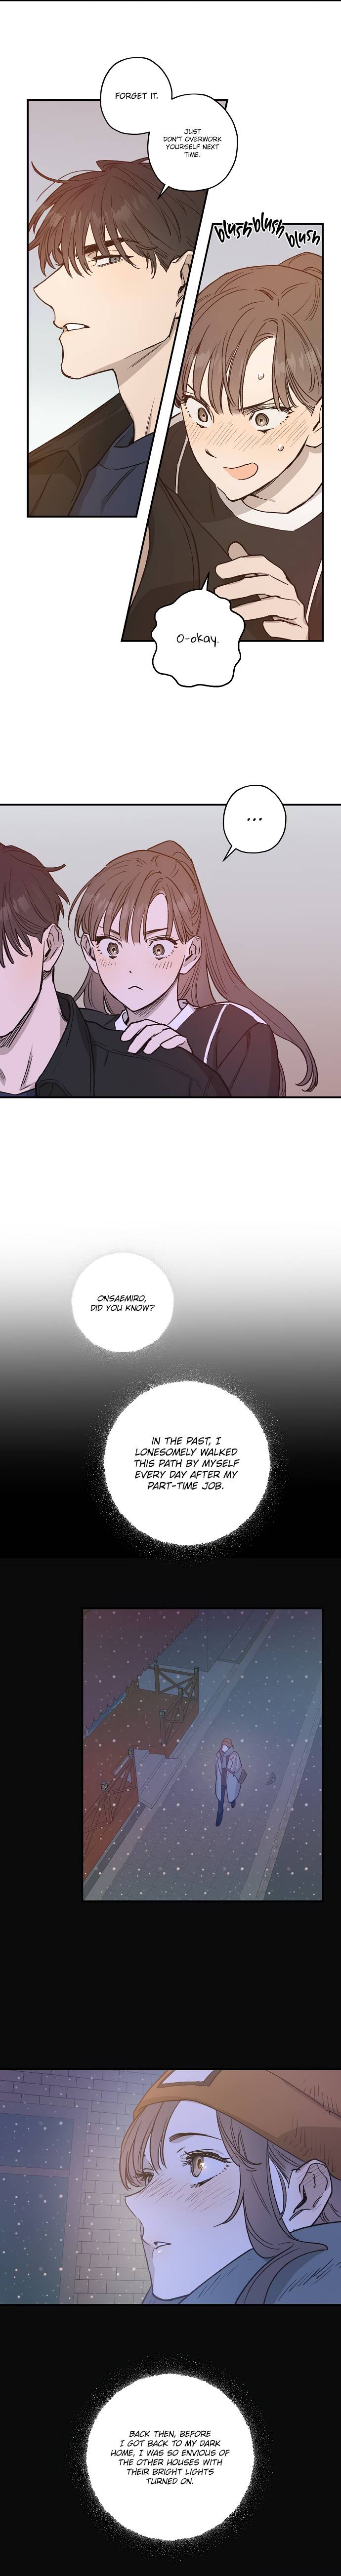 Onsaemiro - Chapter 25 Page 9